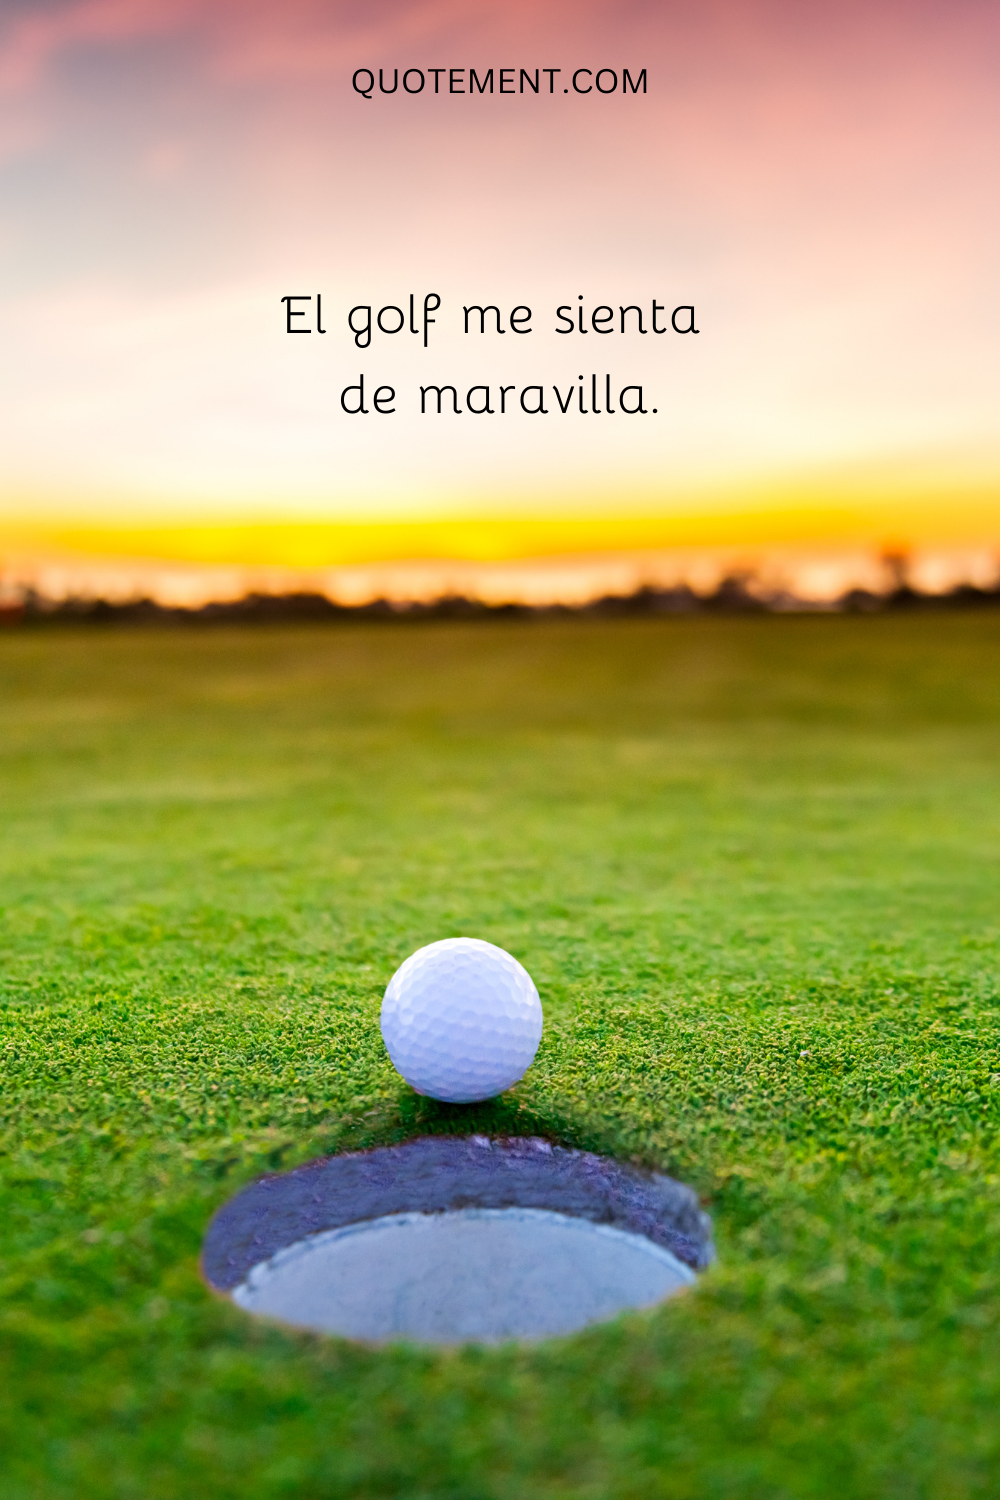 El golf me sienta de maravilla.